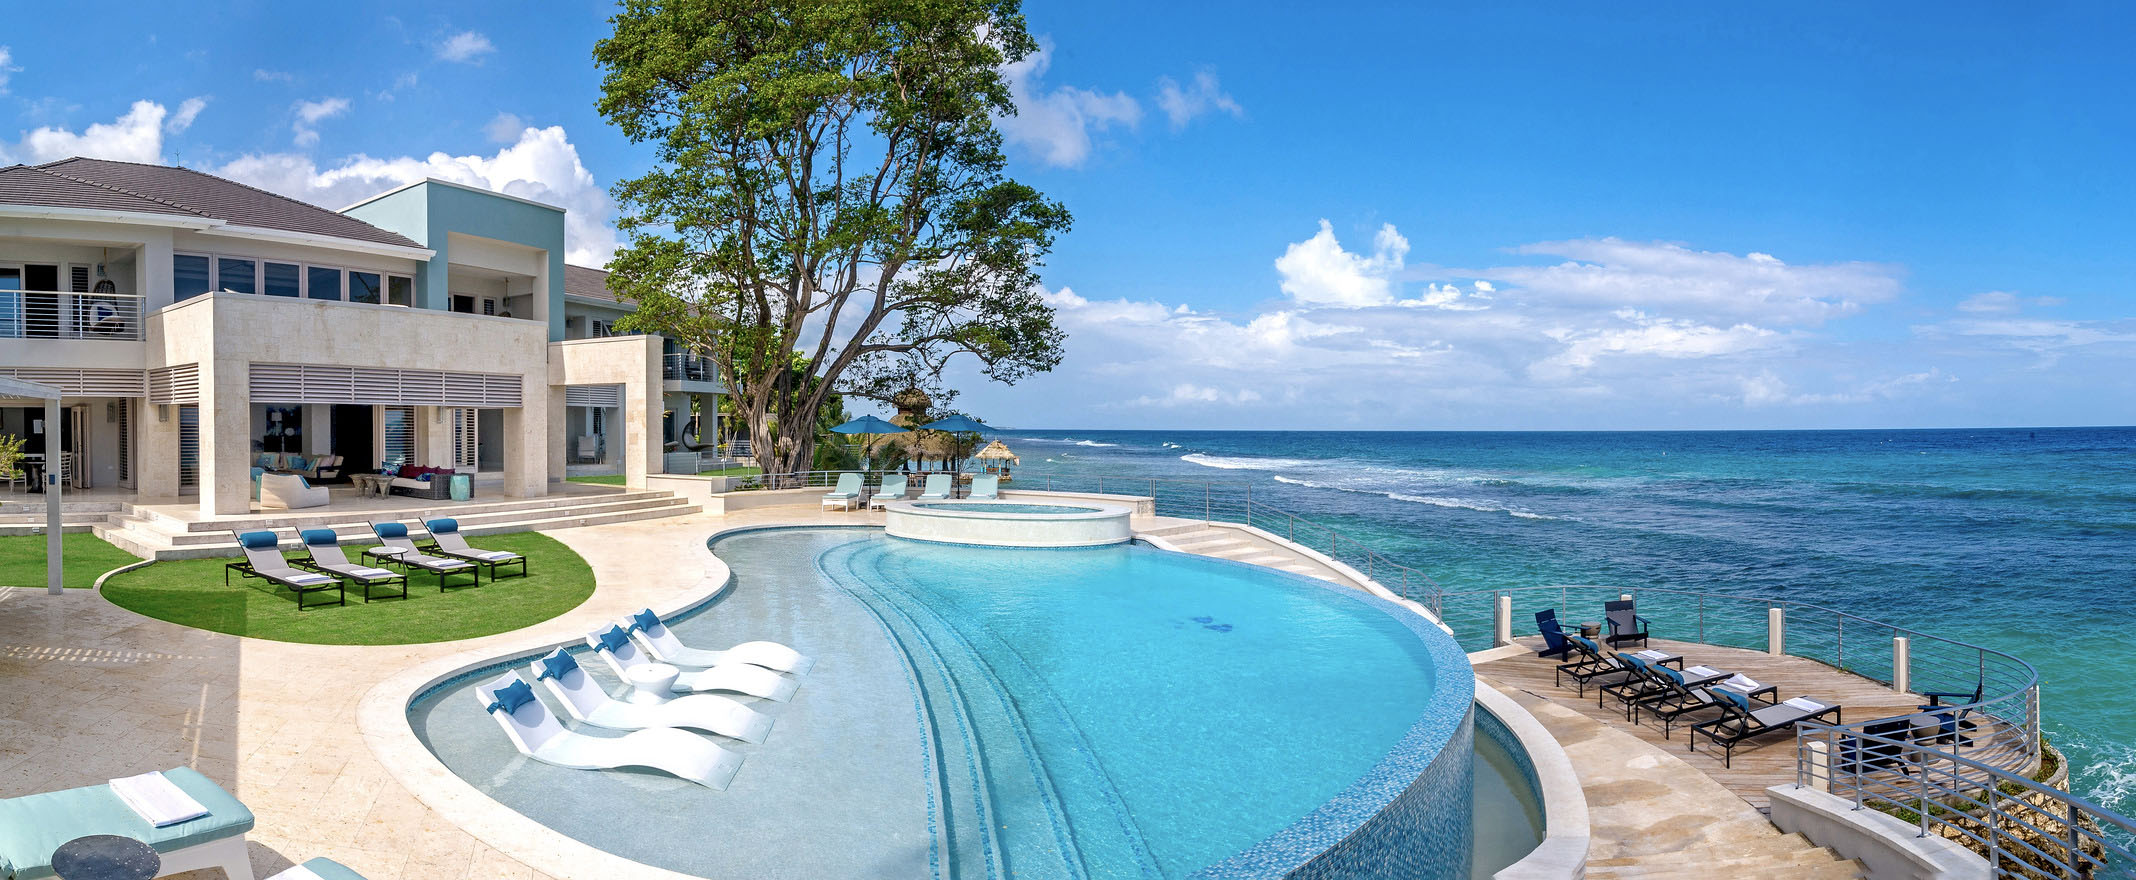 Caribbean Resort Villa Branding